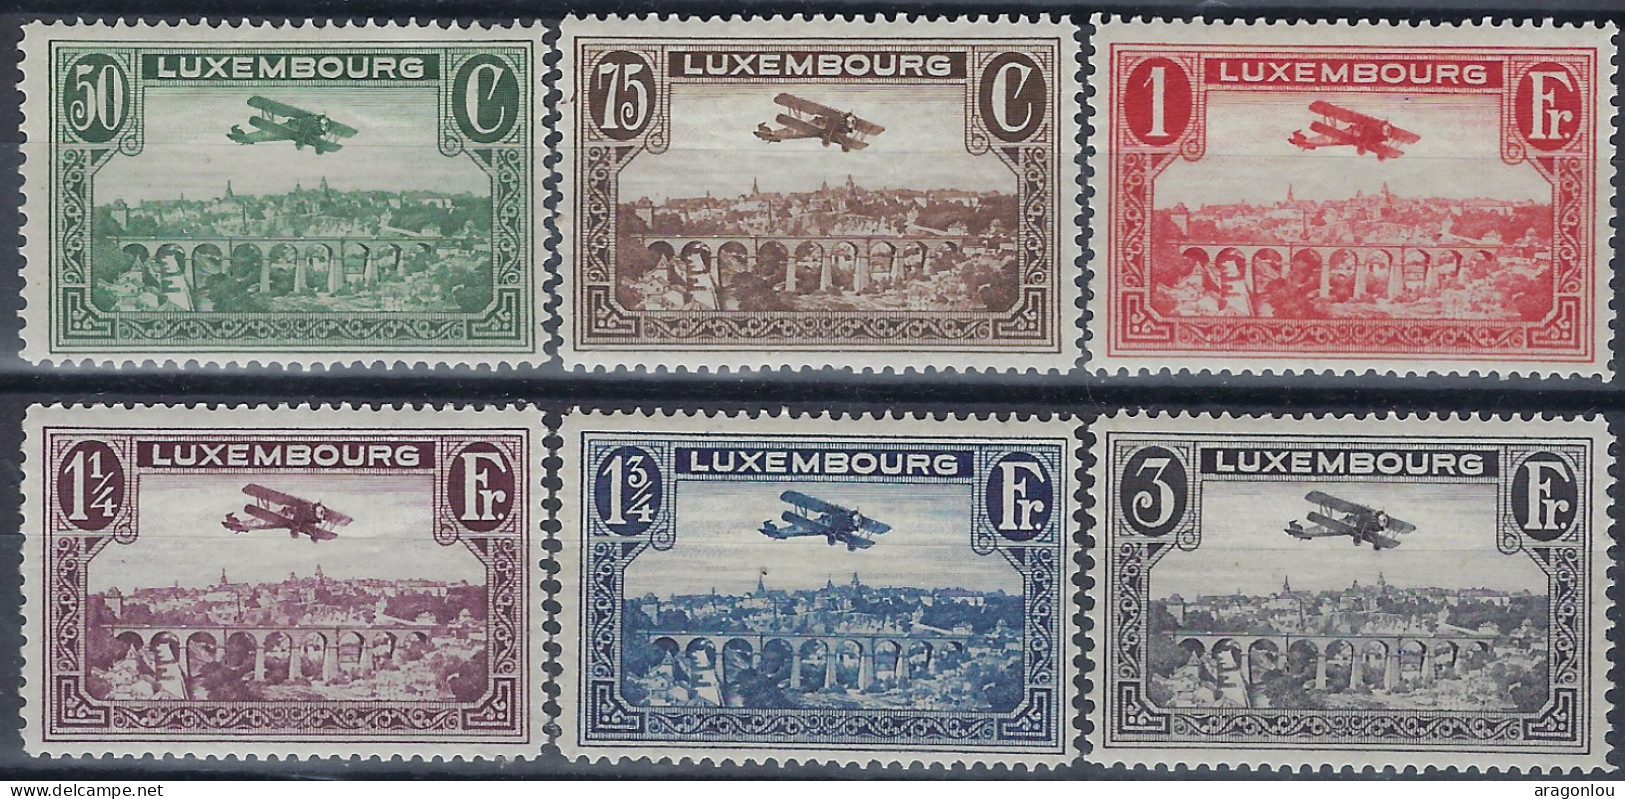 Luxembourg - Luxemburg - Timbres  1931      2 Séries   Biplan  Breguet     MNH** - Neufs